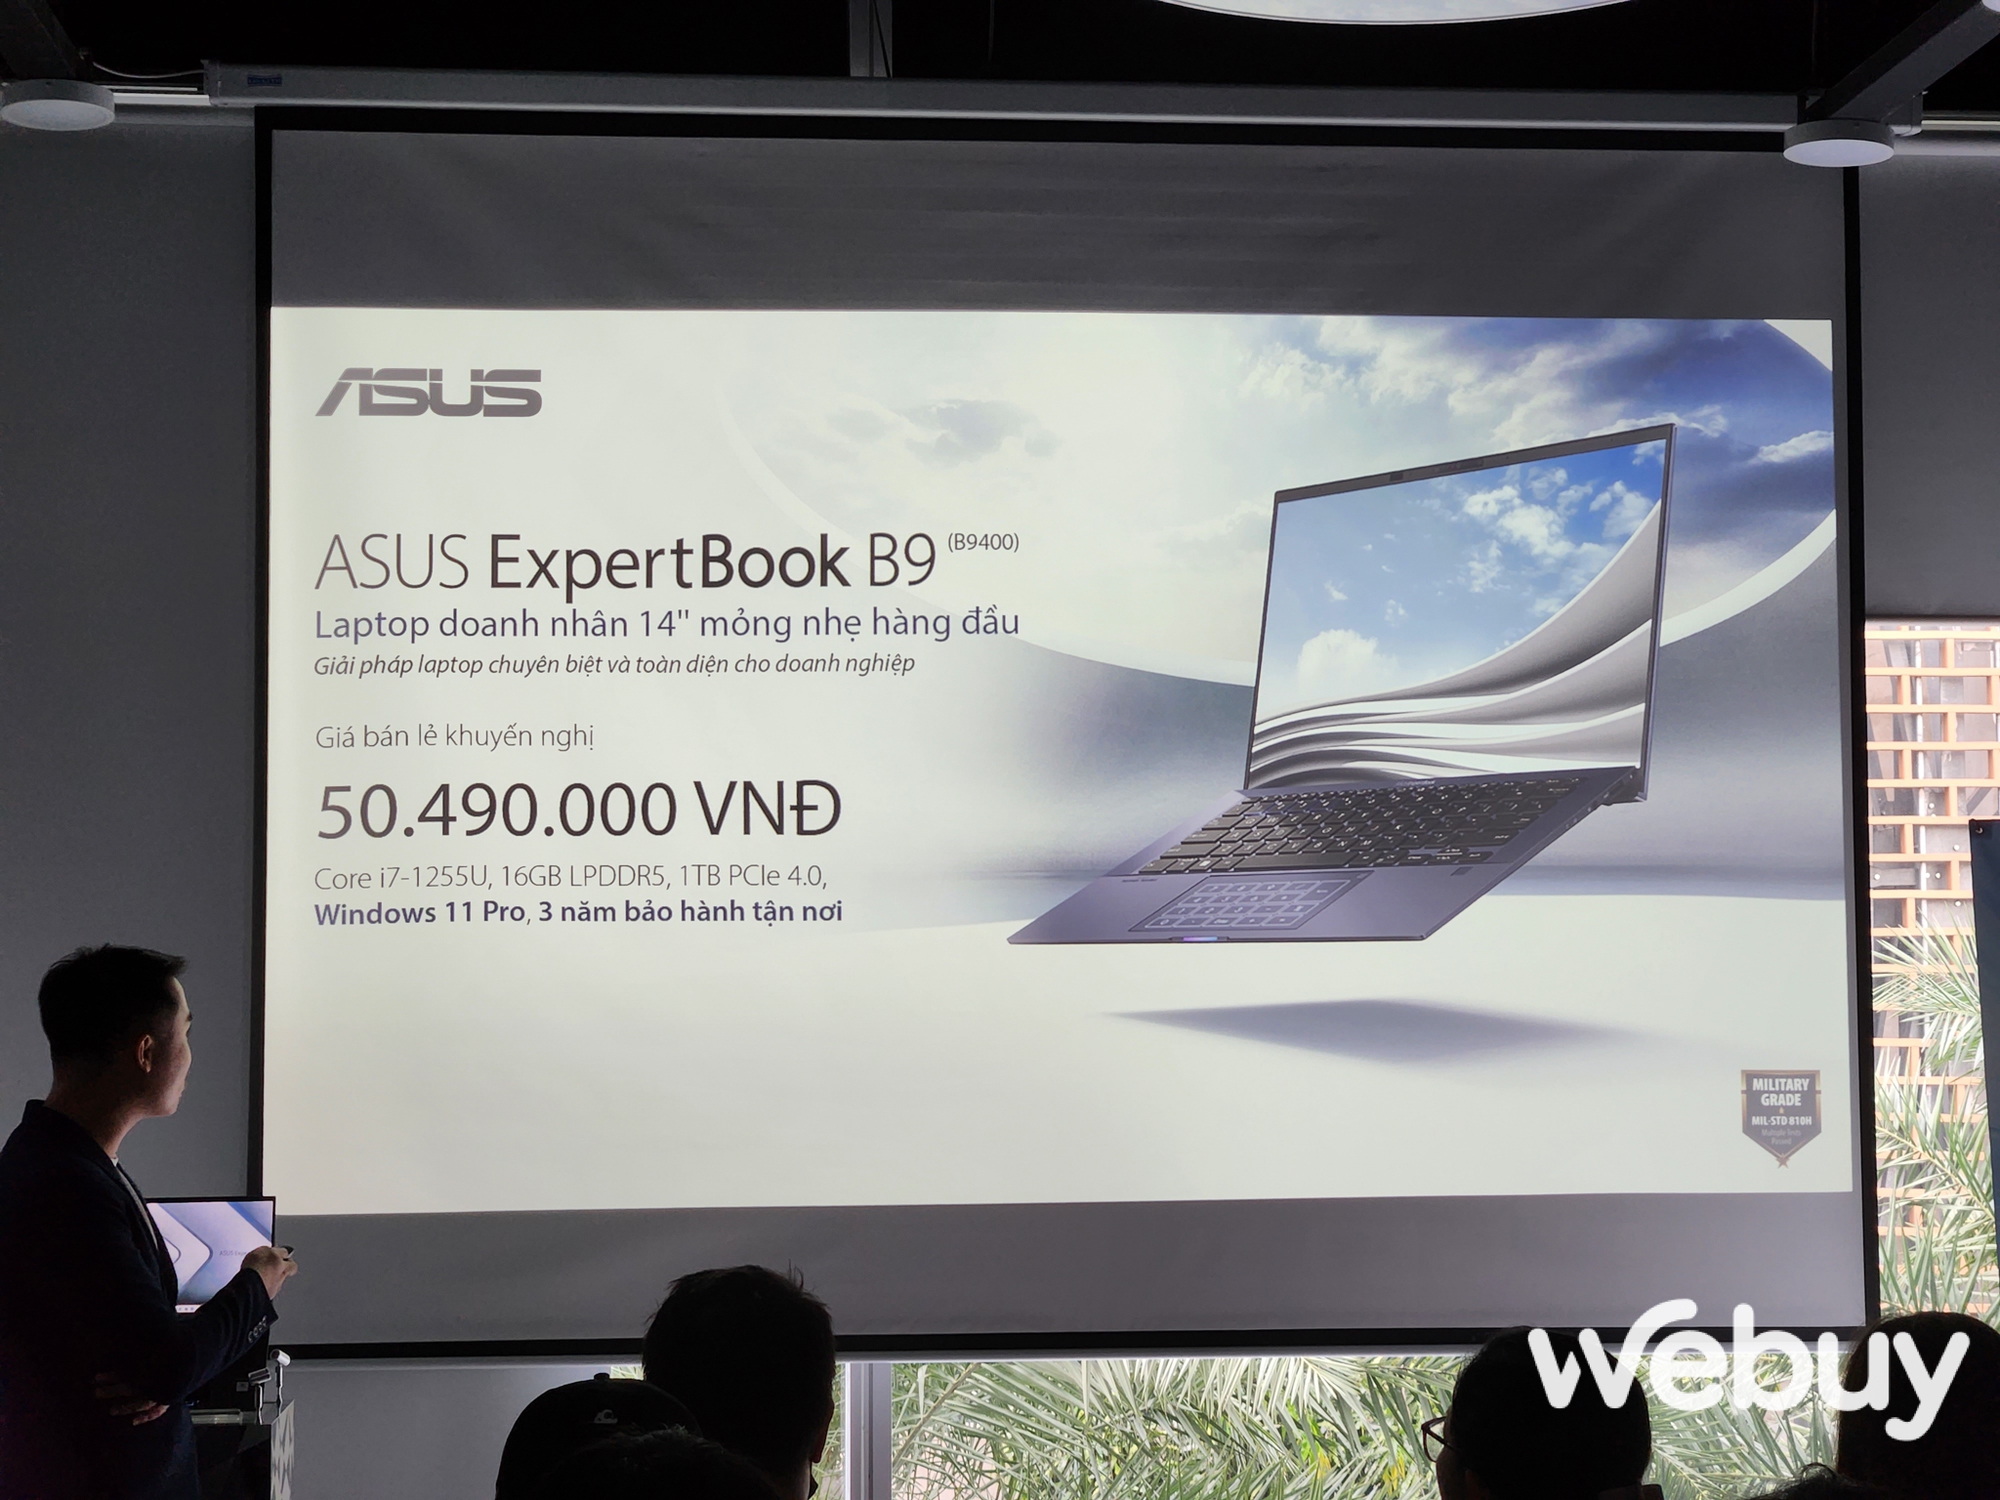 ASUS giới thiệu loạt laptop ExpertBook thế hệ mới, đa dạng lựa chọn hướng đến đối tượng khách hàng doanh nghiệp - Ảnh 18.